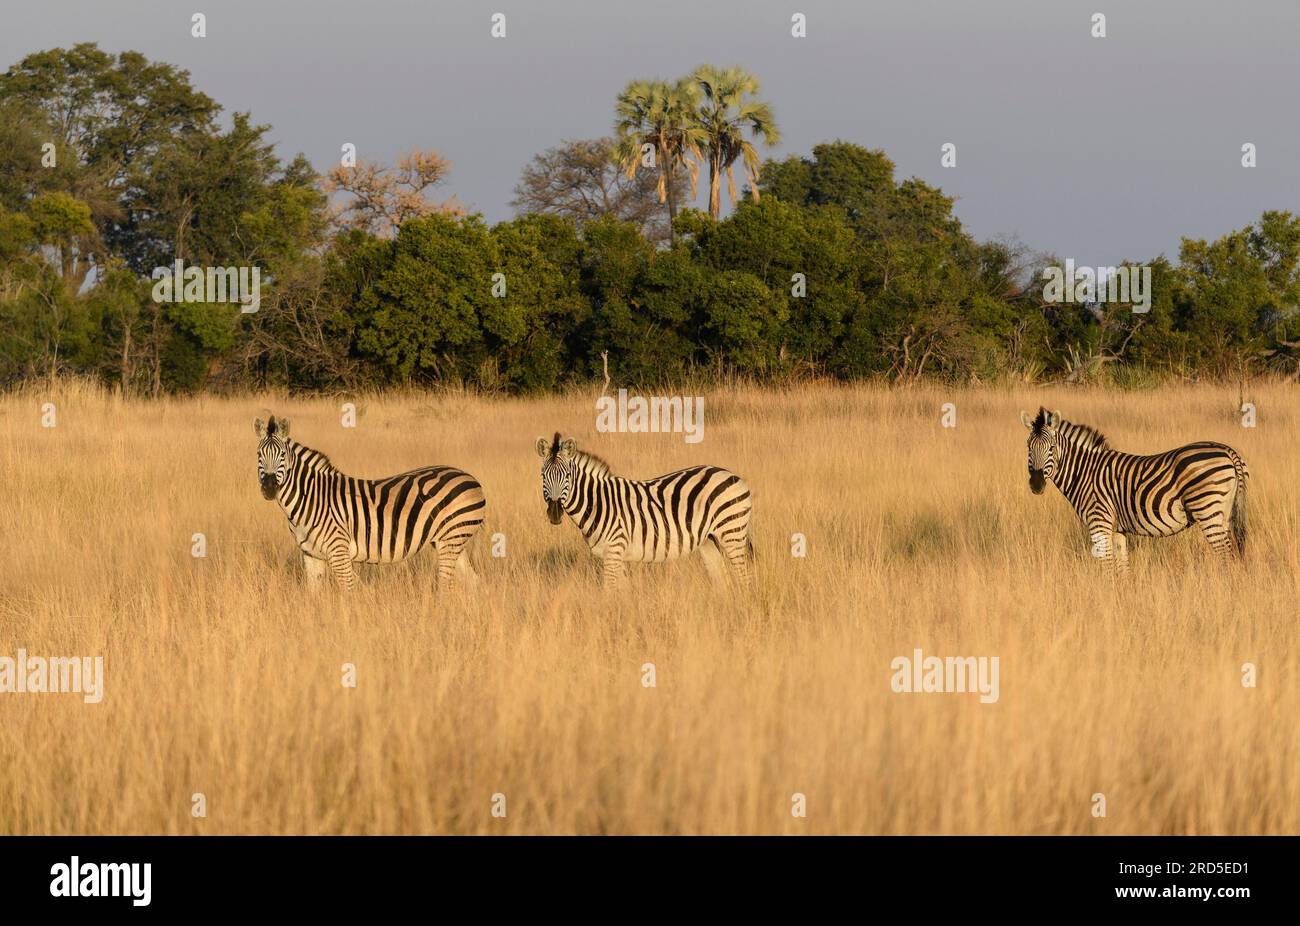 Tre zebre sulle praterie in luce dorata Foto Stock